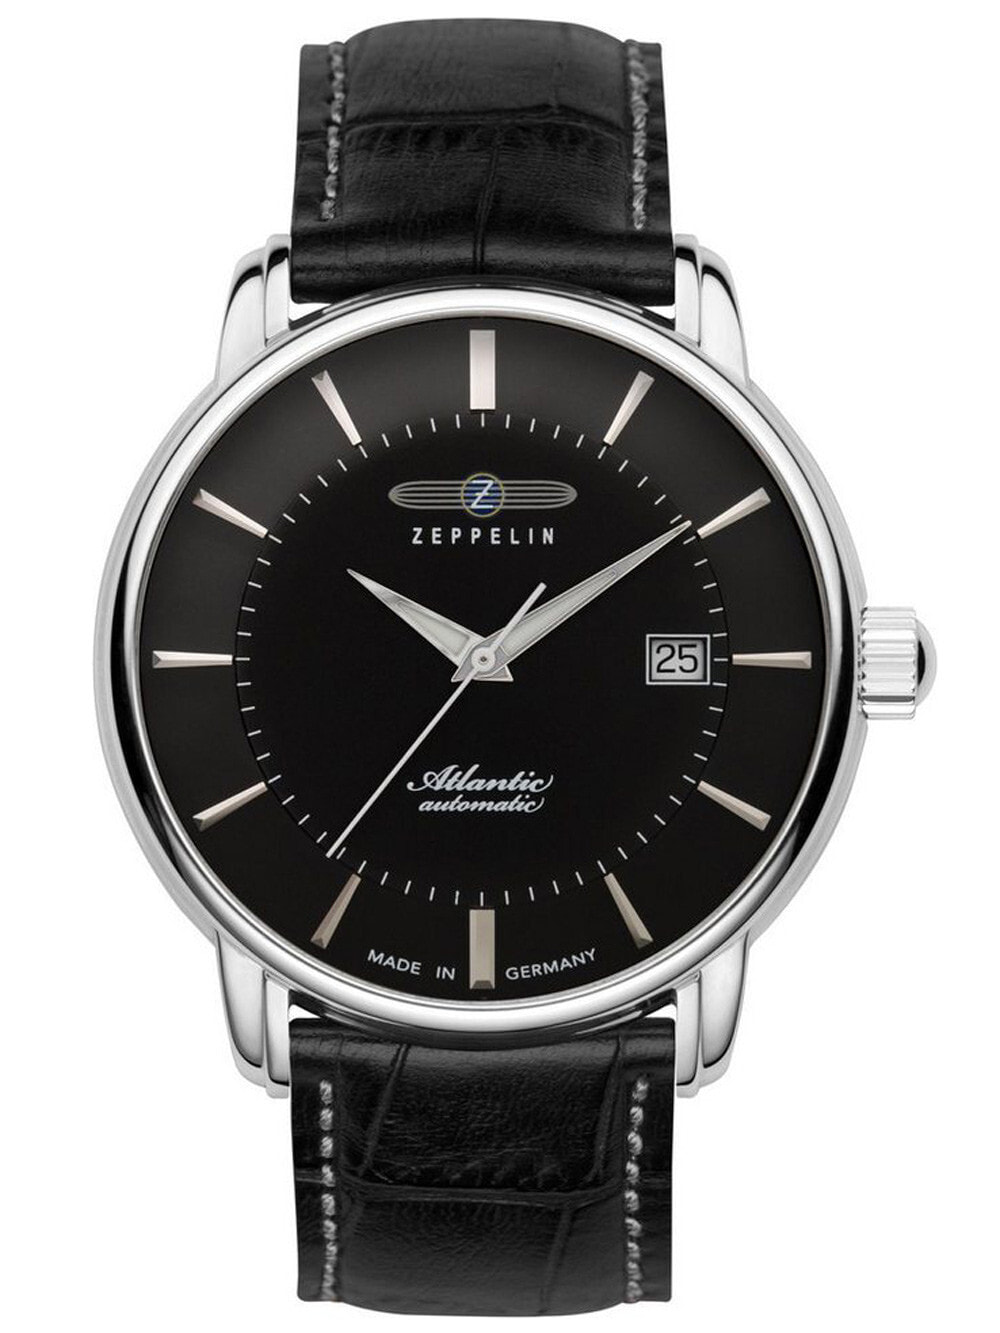 Мужские наручные часы с черным кожаным ремешком Zeppelin 8452-2 Atlantic Mens 40mm 5ATM